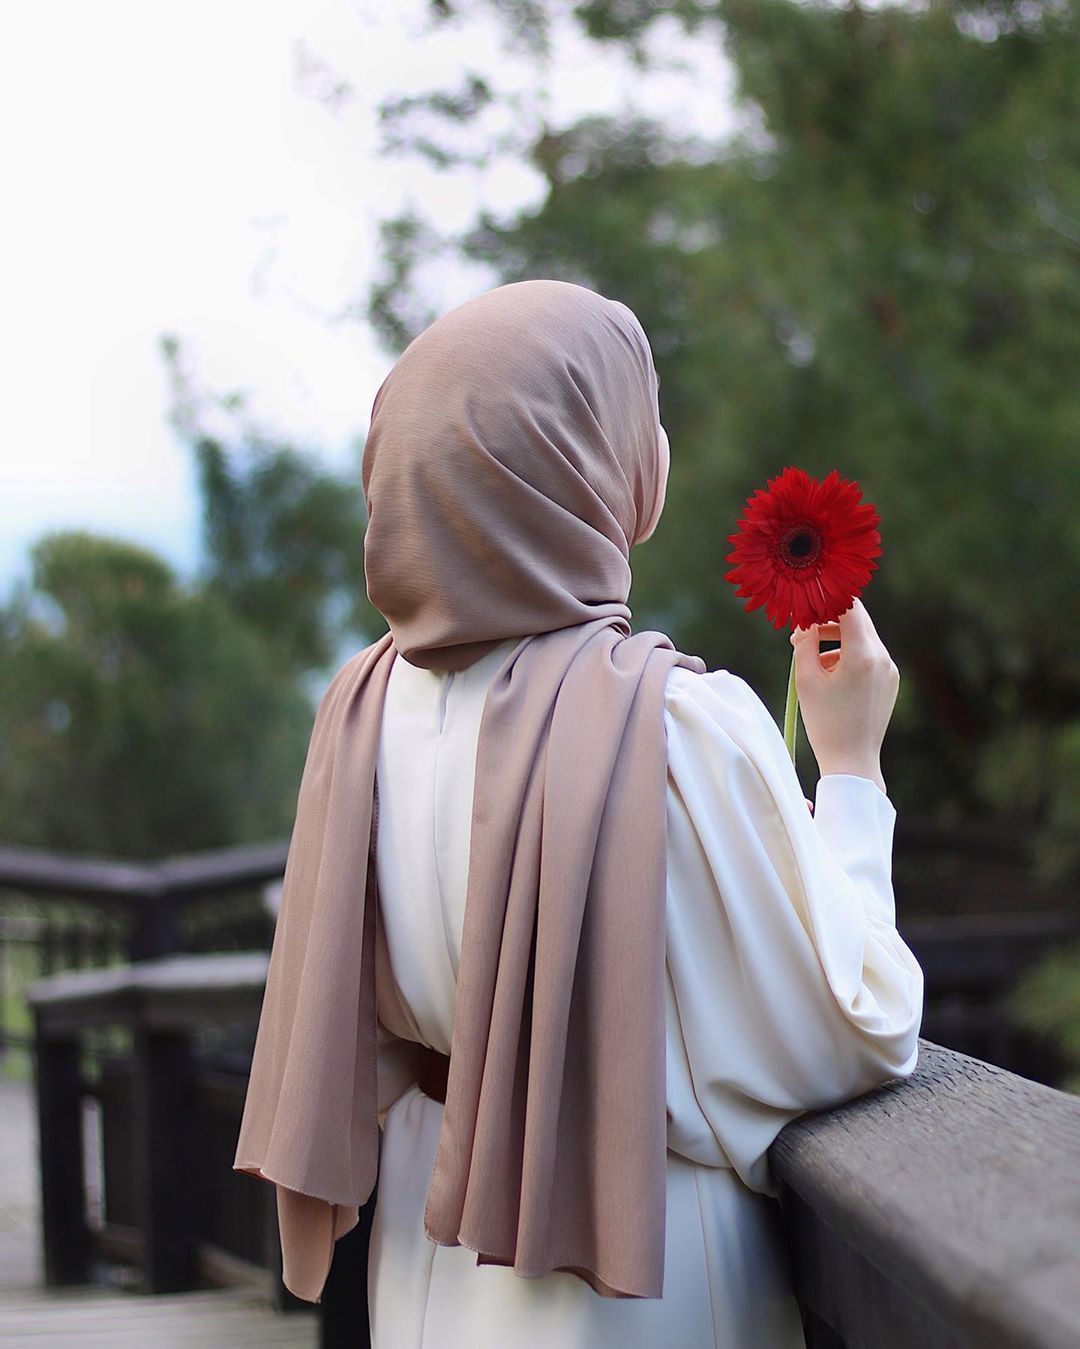 صور رمزية عن حجابي 2